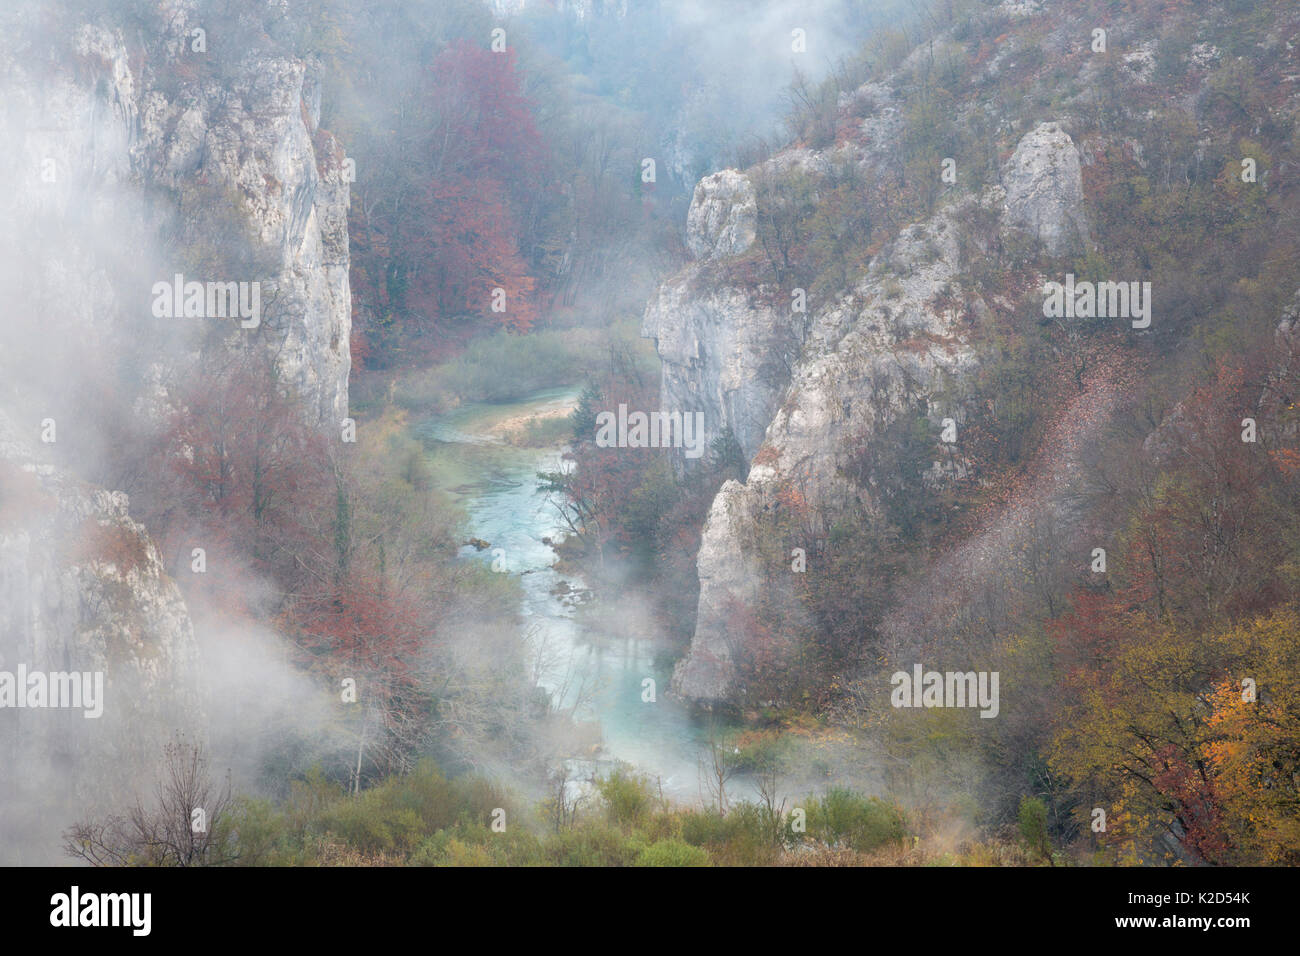 Misty desfiladero de piedra caliza, Parque Nacional de Los Lagos de Plitvice (Croacia). De noviembre. Foto de stock